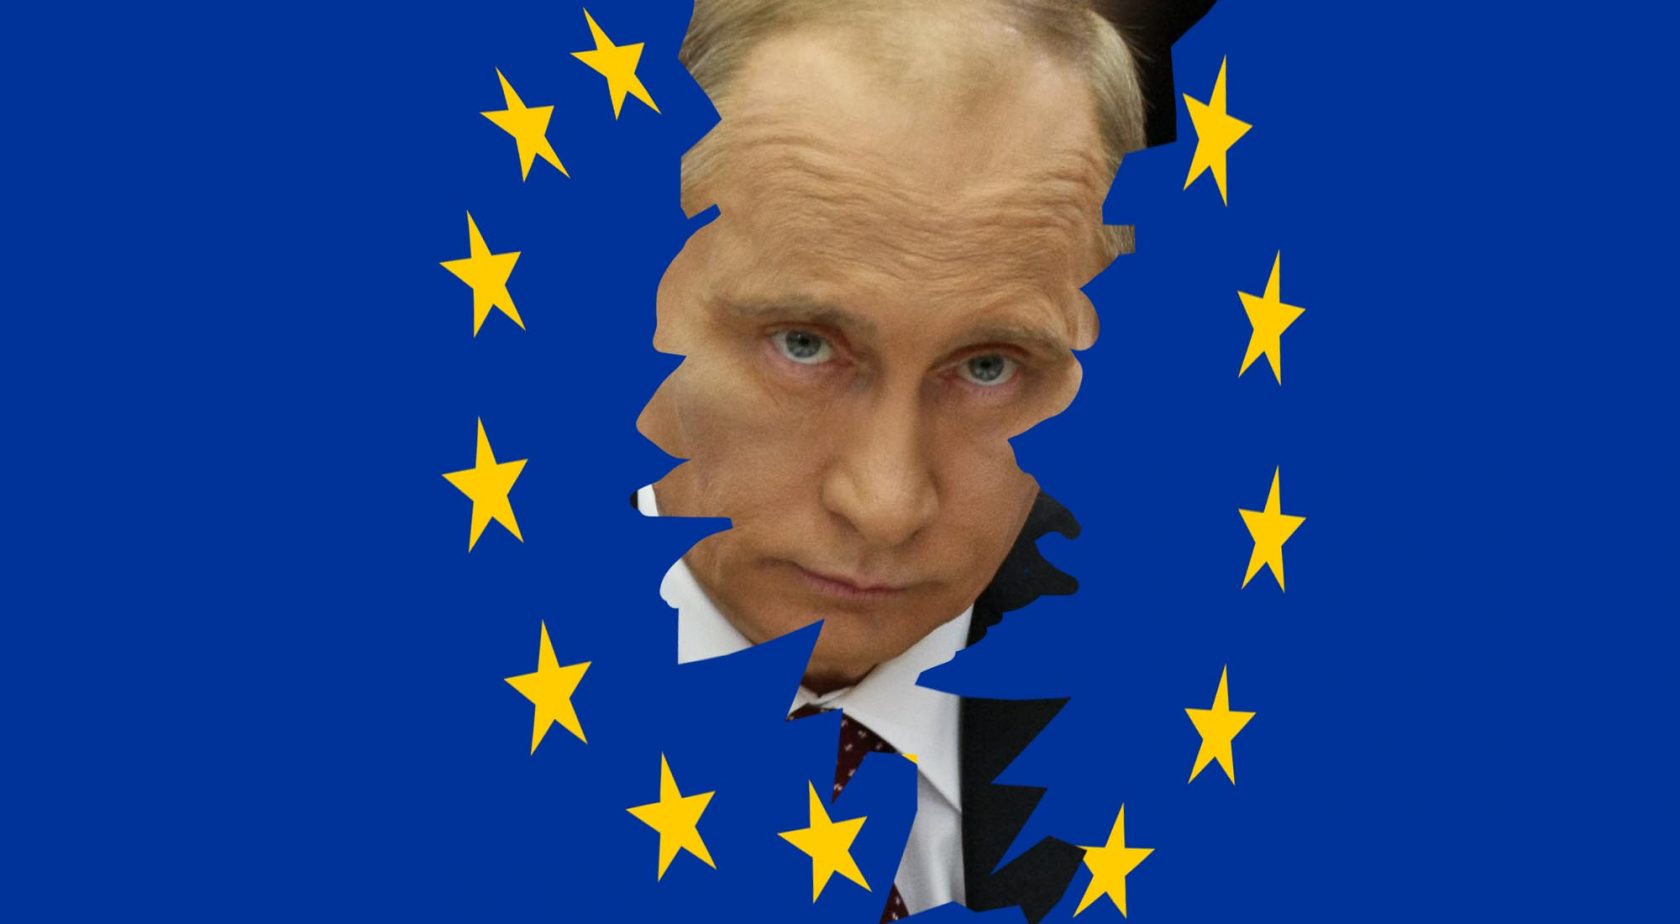 Pensare all’Europa dopo l’aggressione all’Ucraina